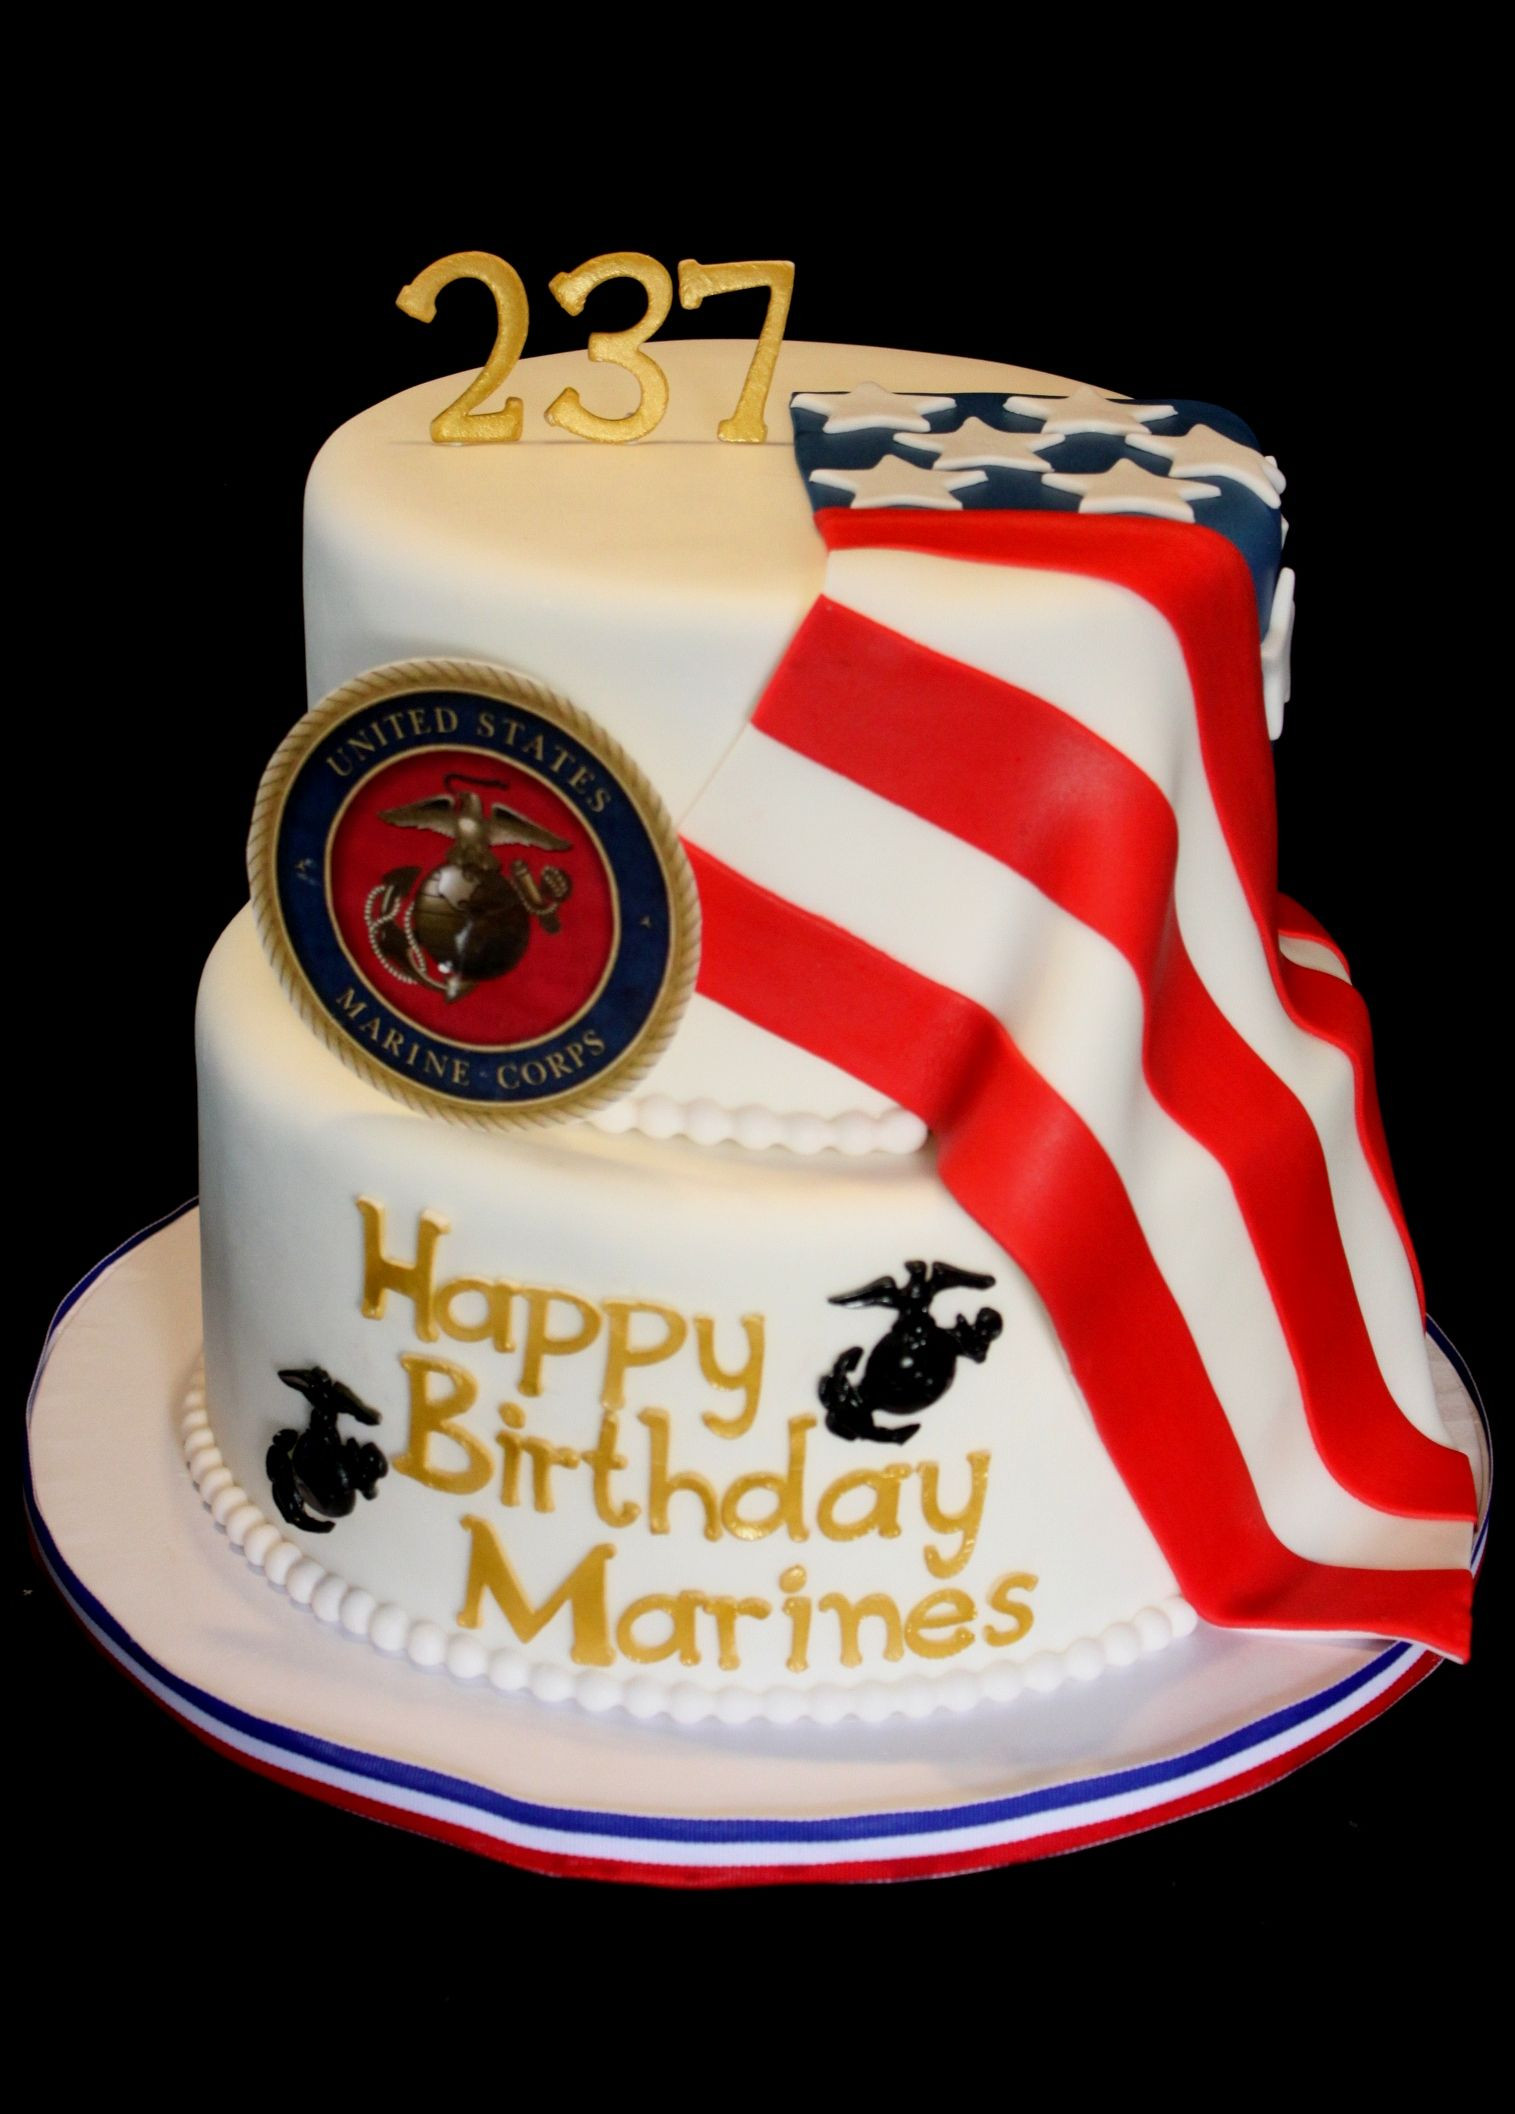 Marine Corps Birthday Cake
 Marine Corps Birthday Cake